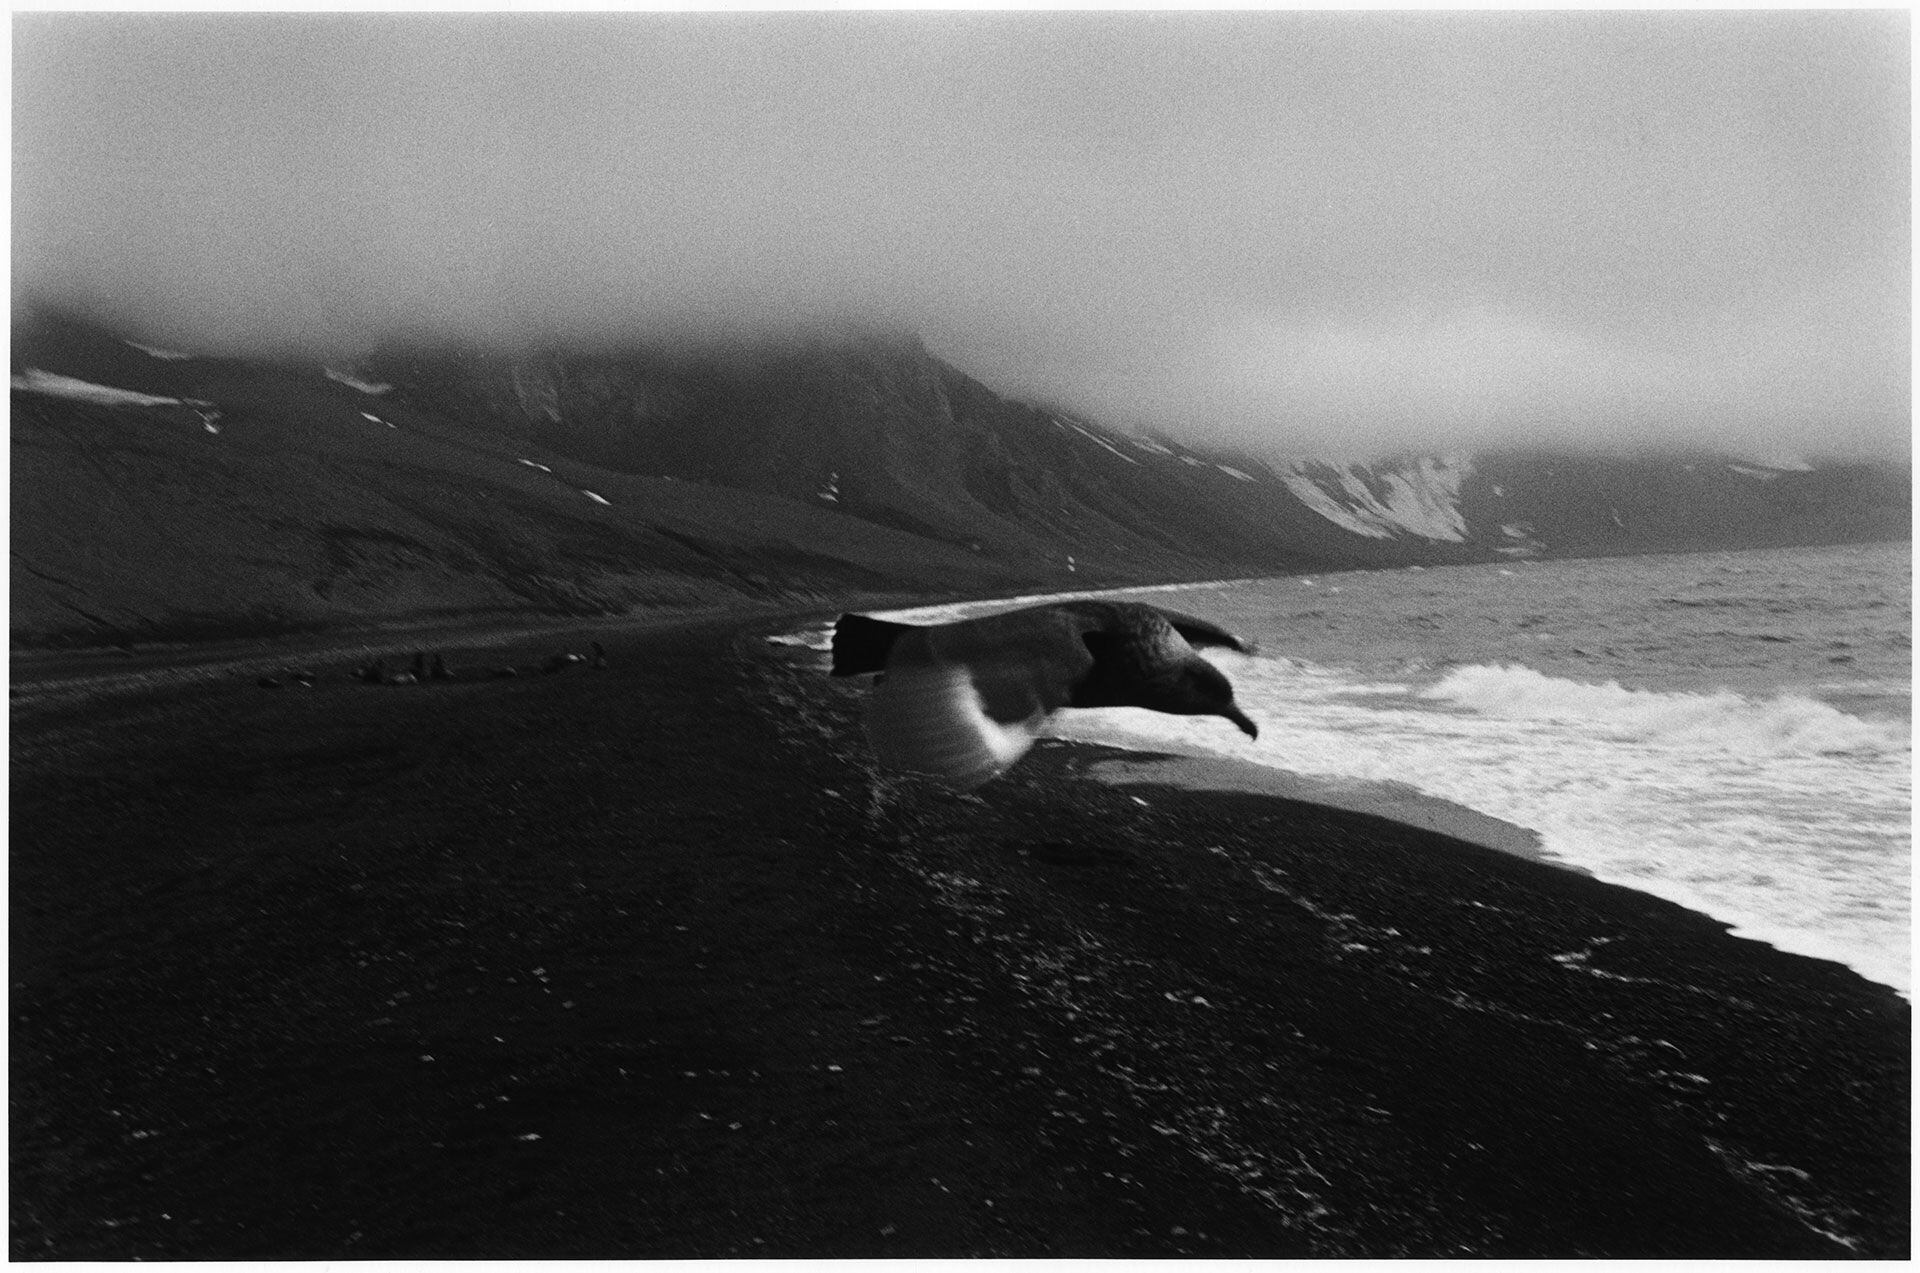 Antártida negra, de Lestido, reúne una serie de fotografías realizadas entre febrero y marzo de 2012, en las bases argentinas Decepción y Cámara